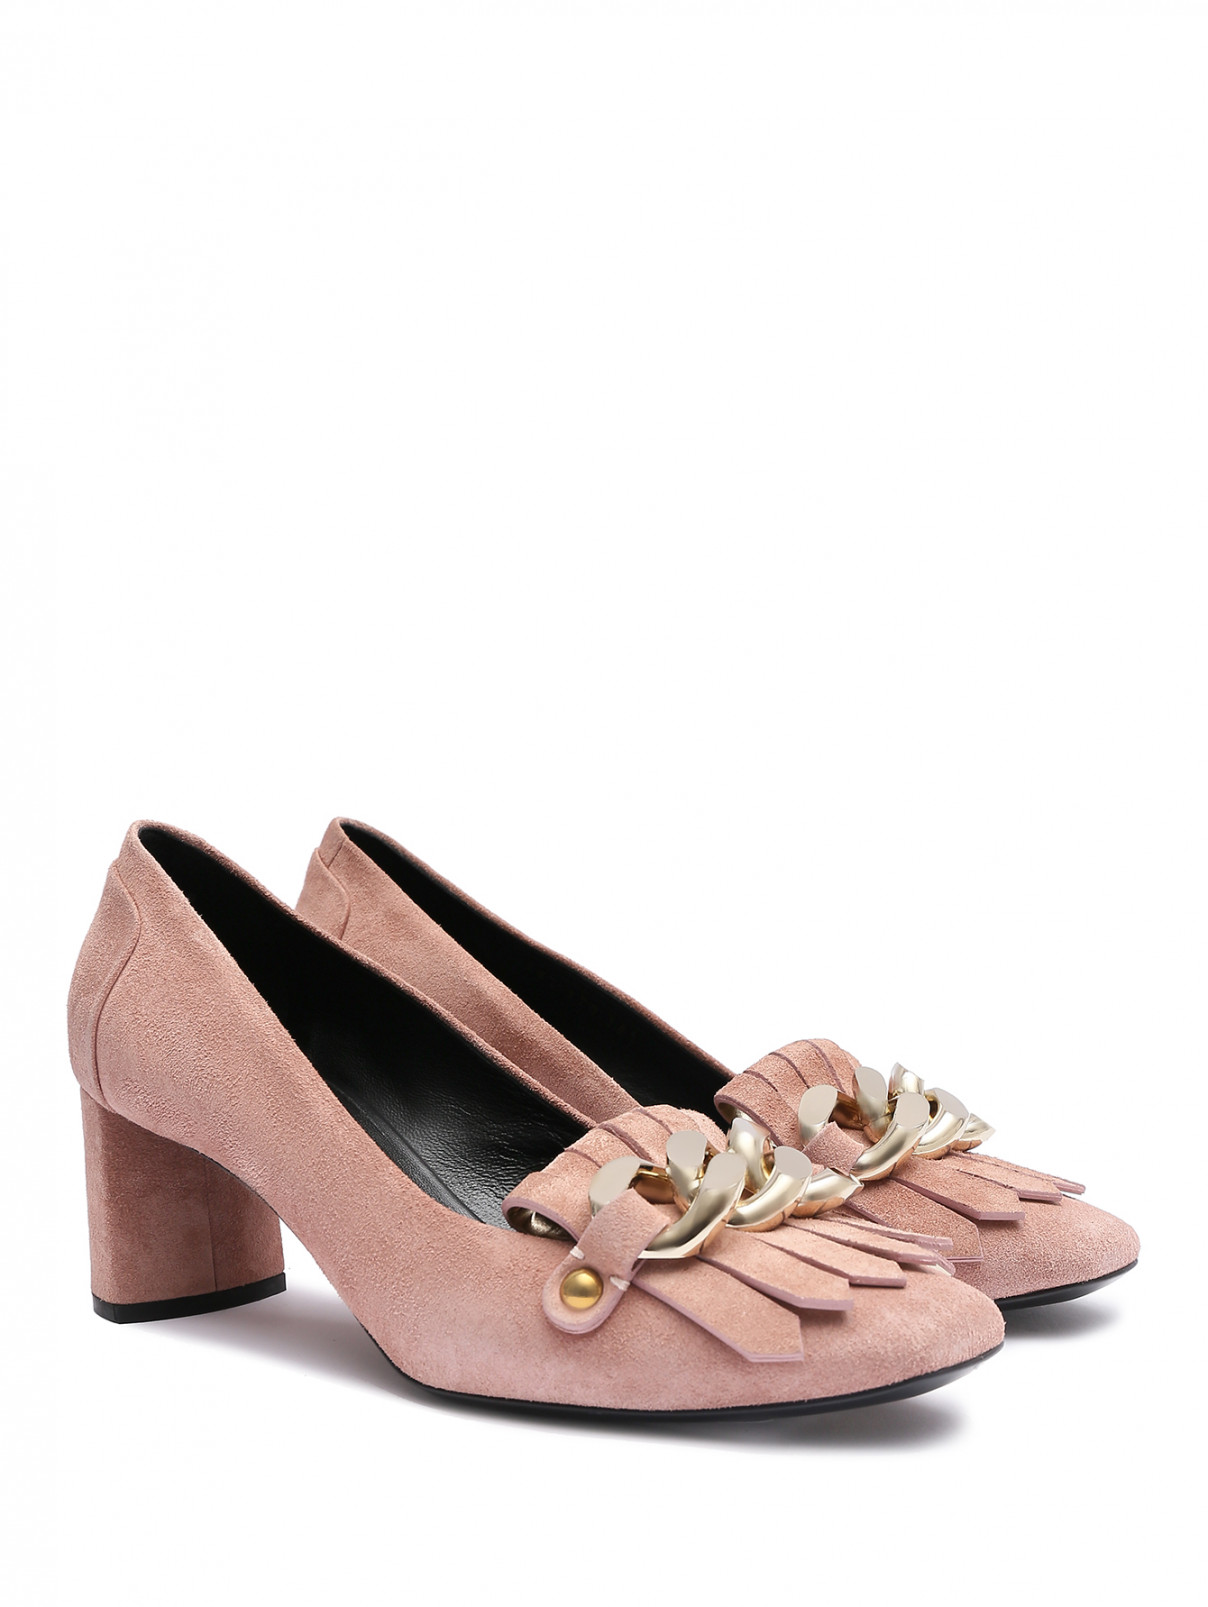 Туфли из кожи на среднем каблуке Casadei  –  Общий вид  – Цвет:  Розовый